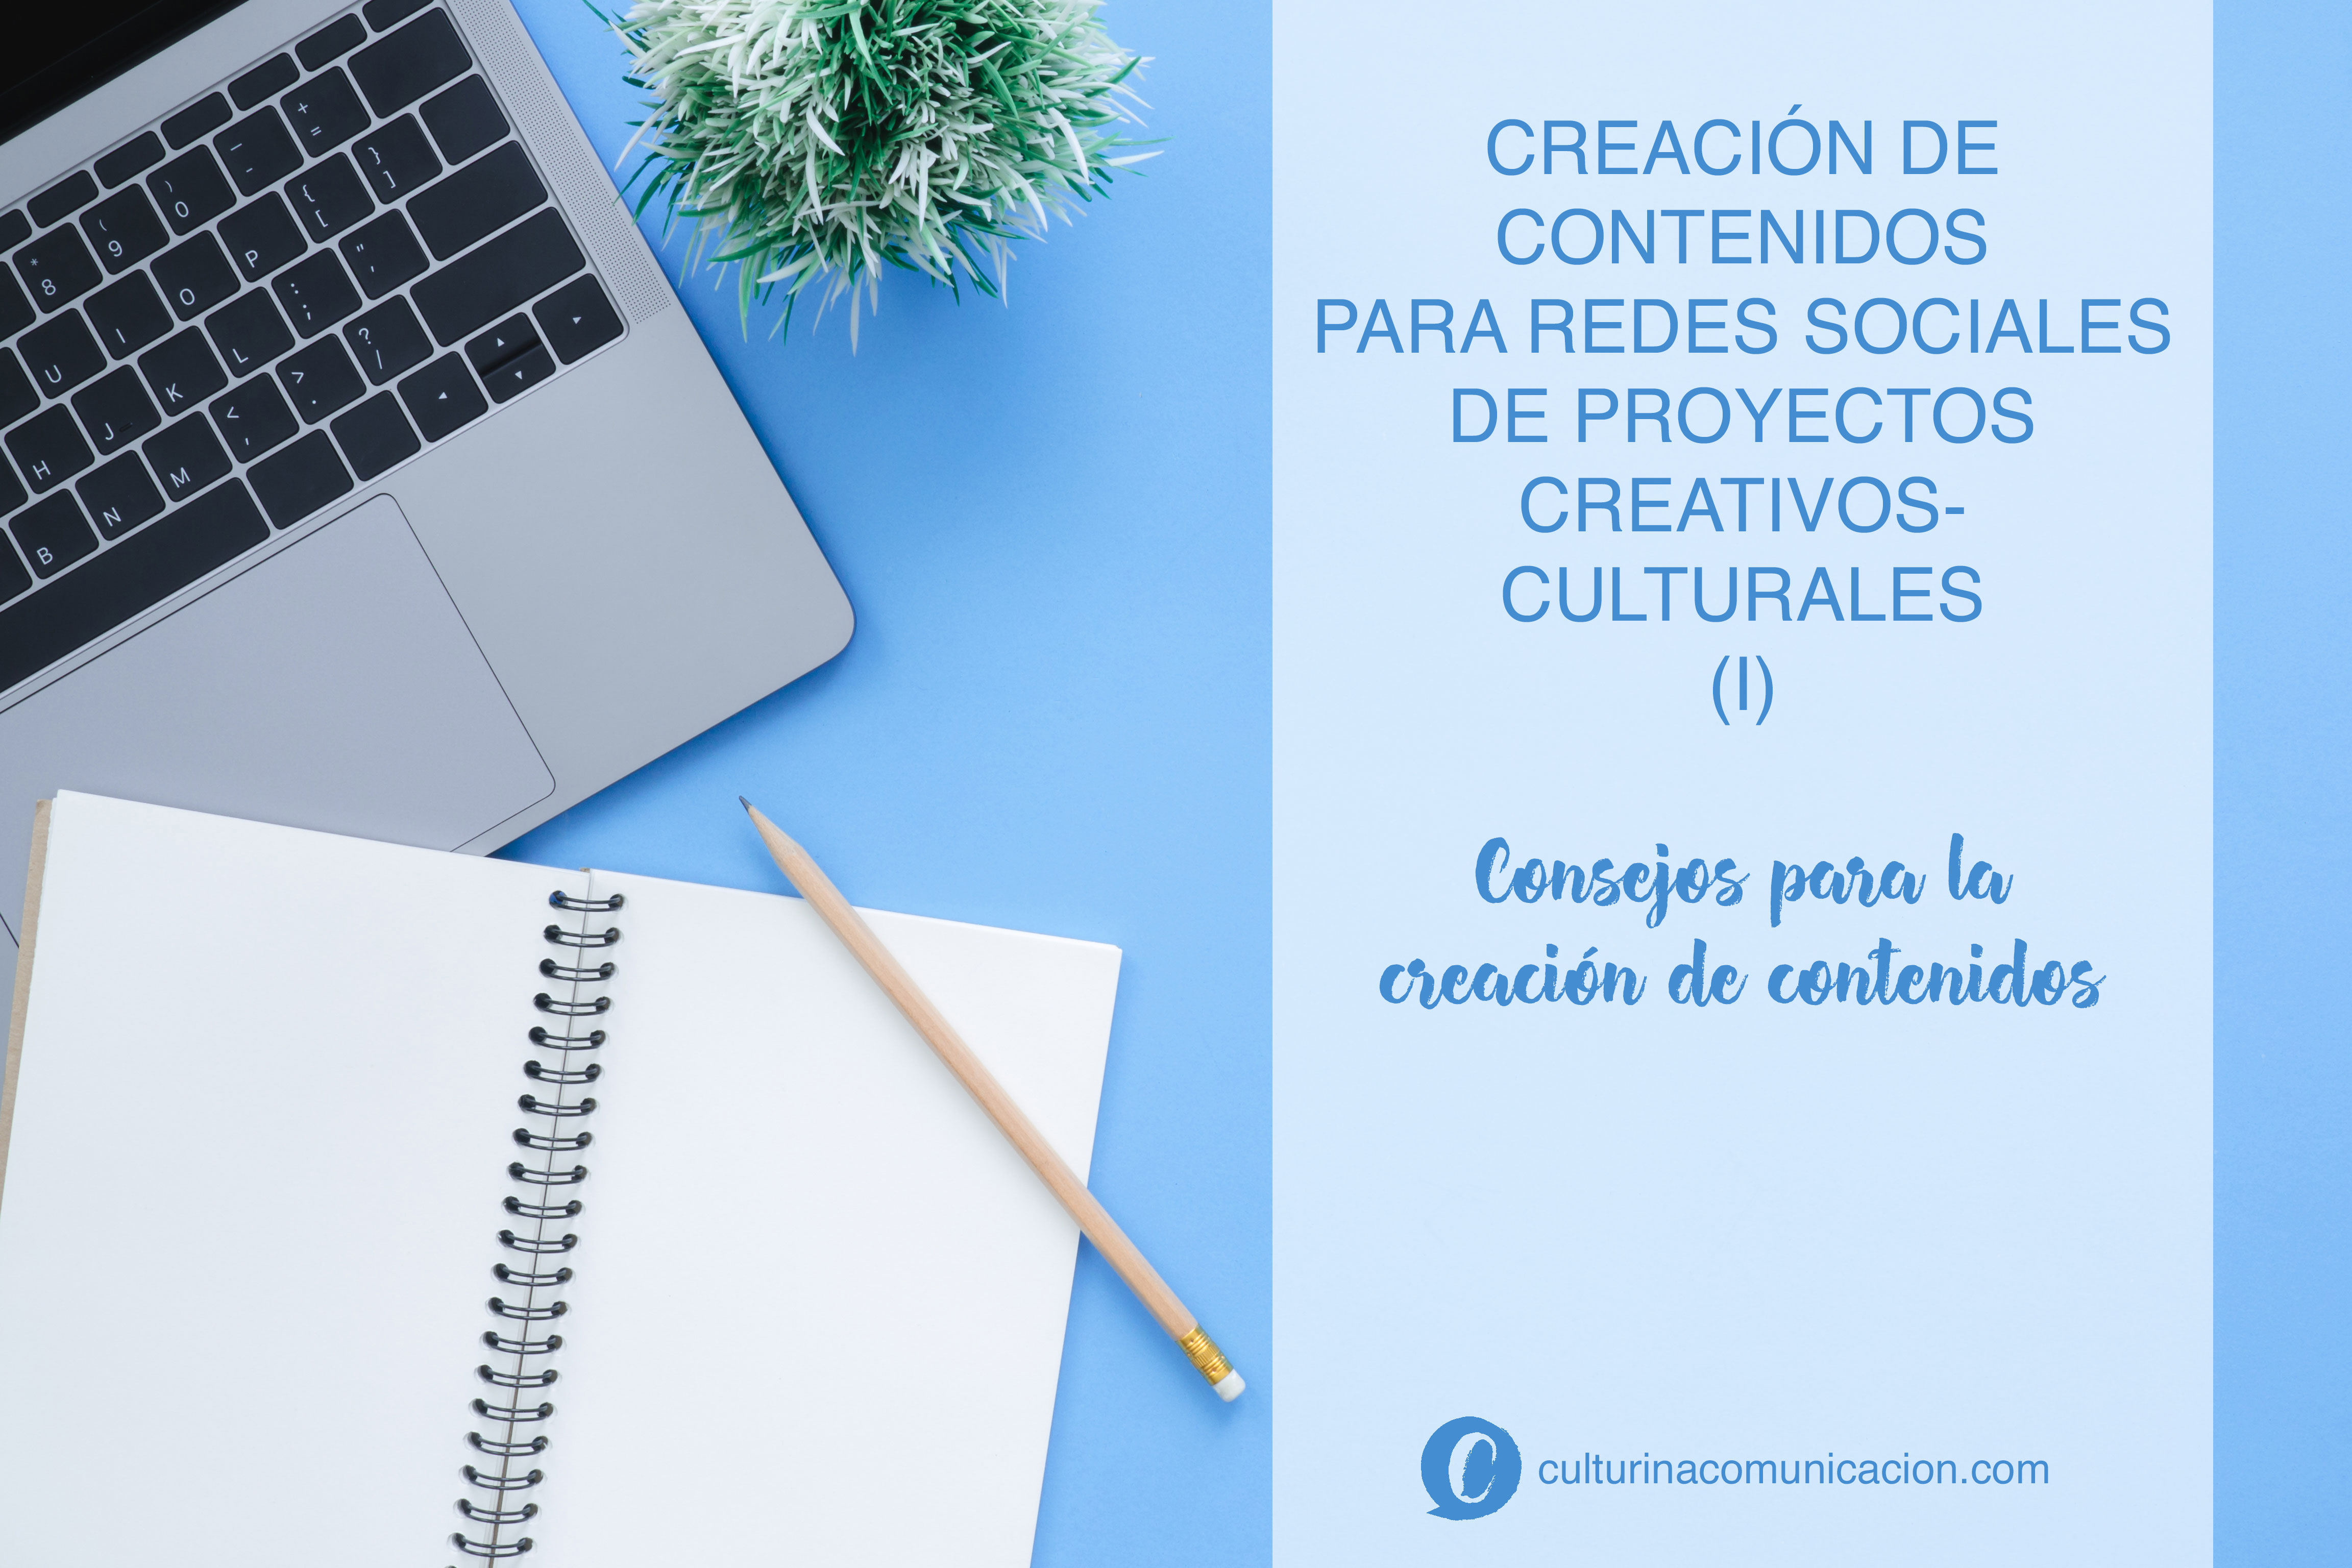 Creación de contenido para redes sociales proyectos creativos y culturales, culturina comunicación